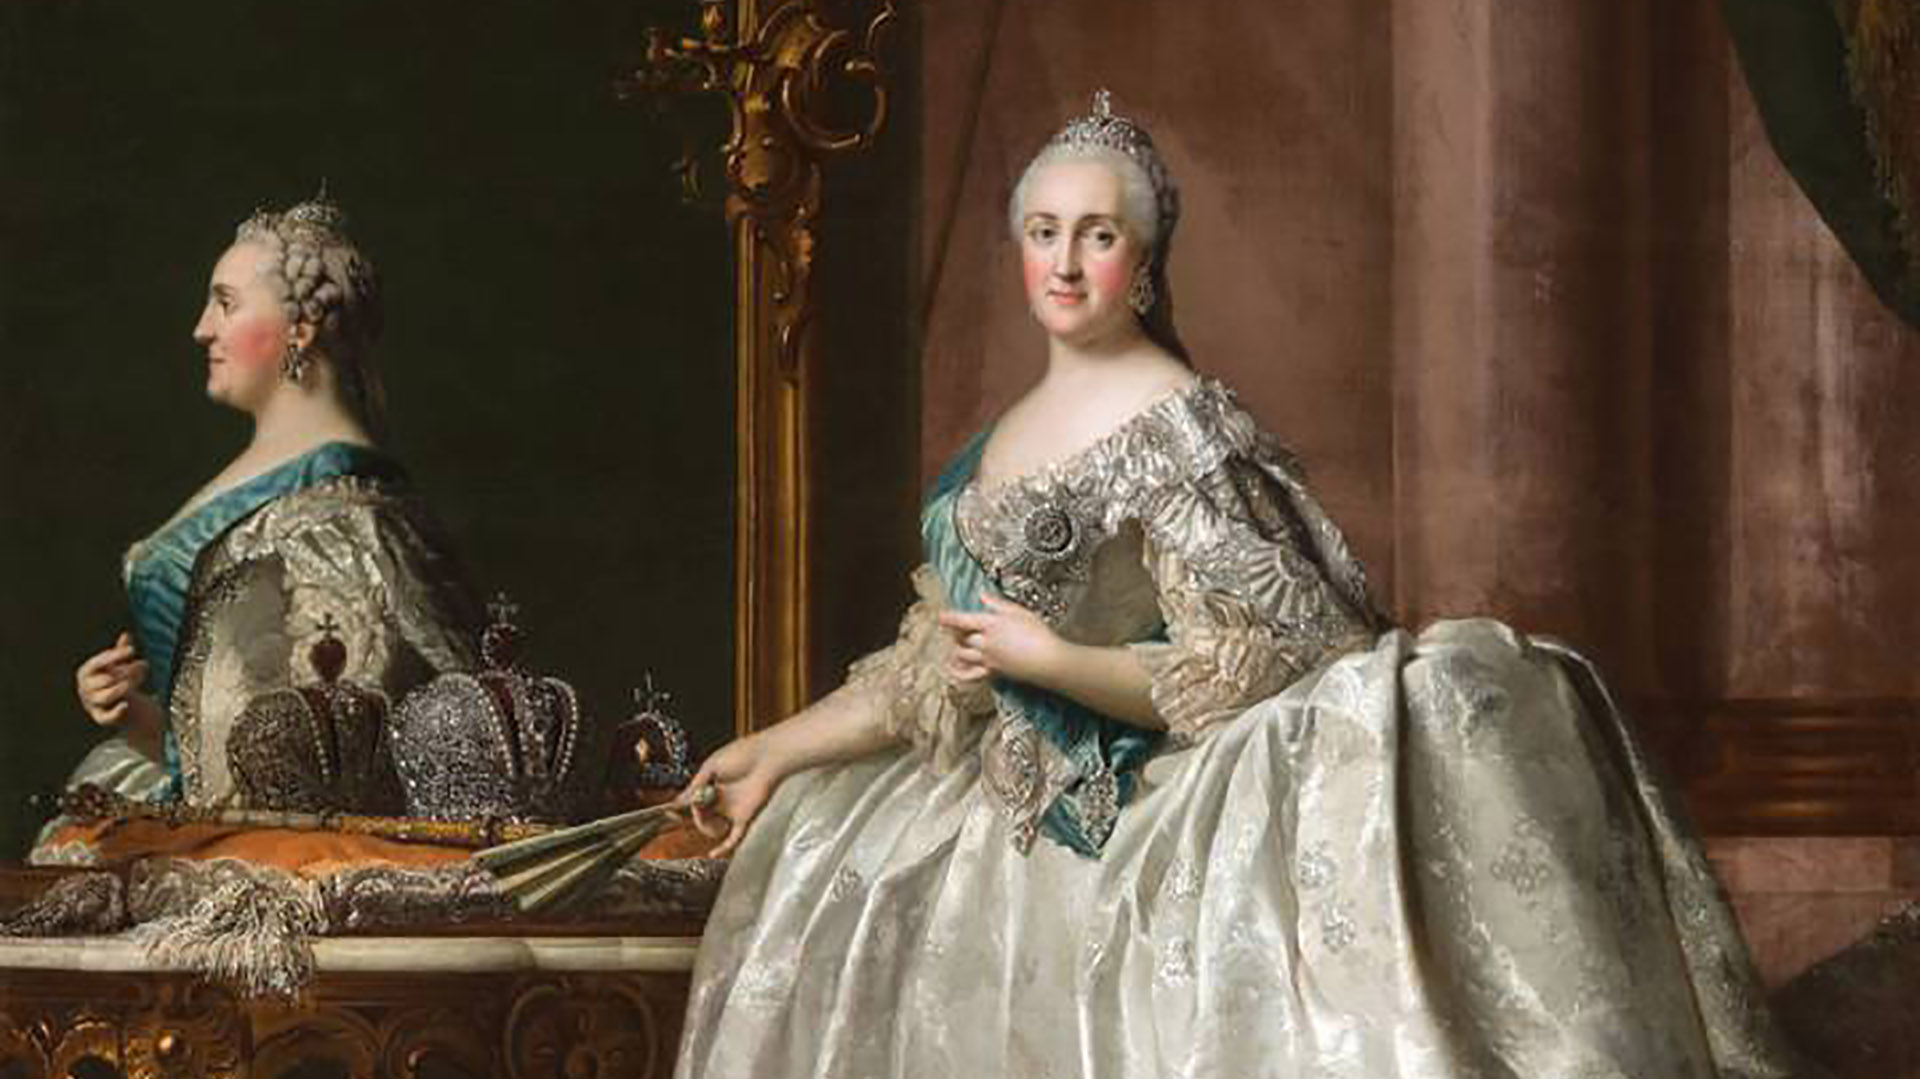 Catalina la Grande, la emperatriz más importante en la historia rusa  considerada por muchos como usurpadora - Infobae